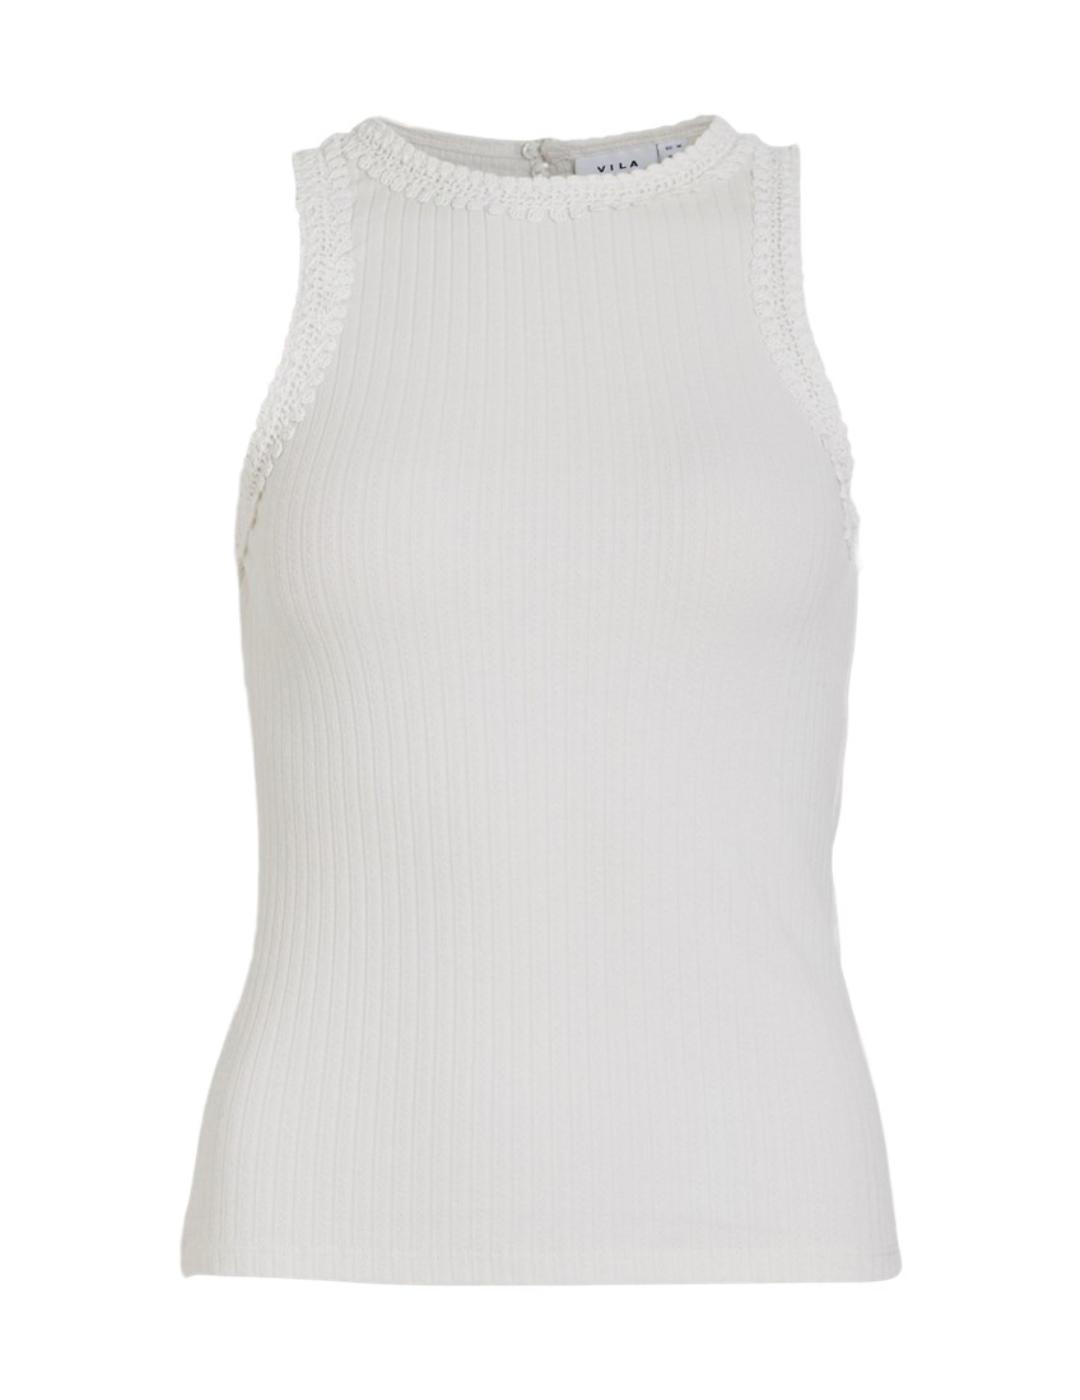 Camiseta Vila Babia blanco cuello halter para mujer